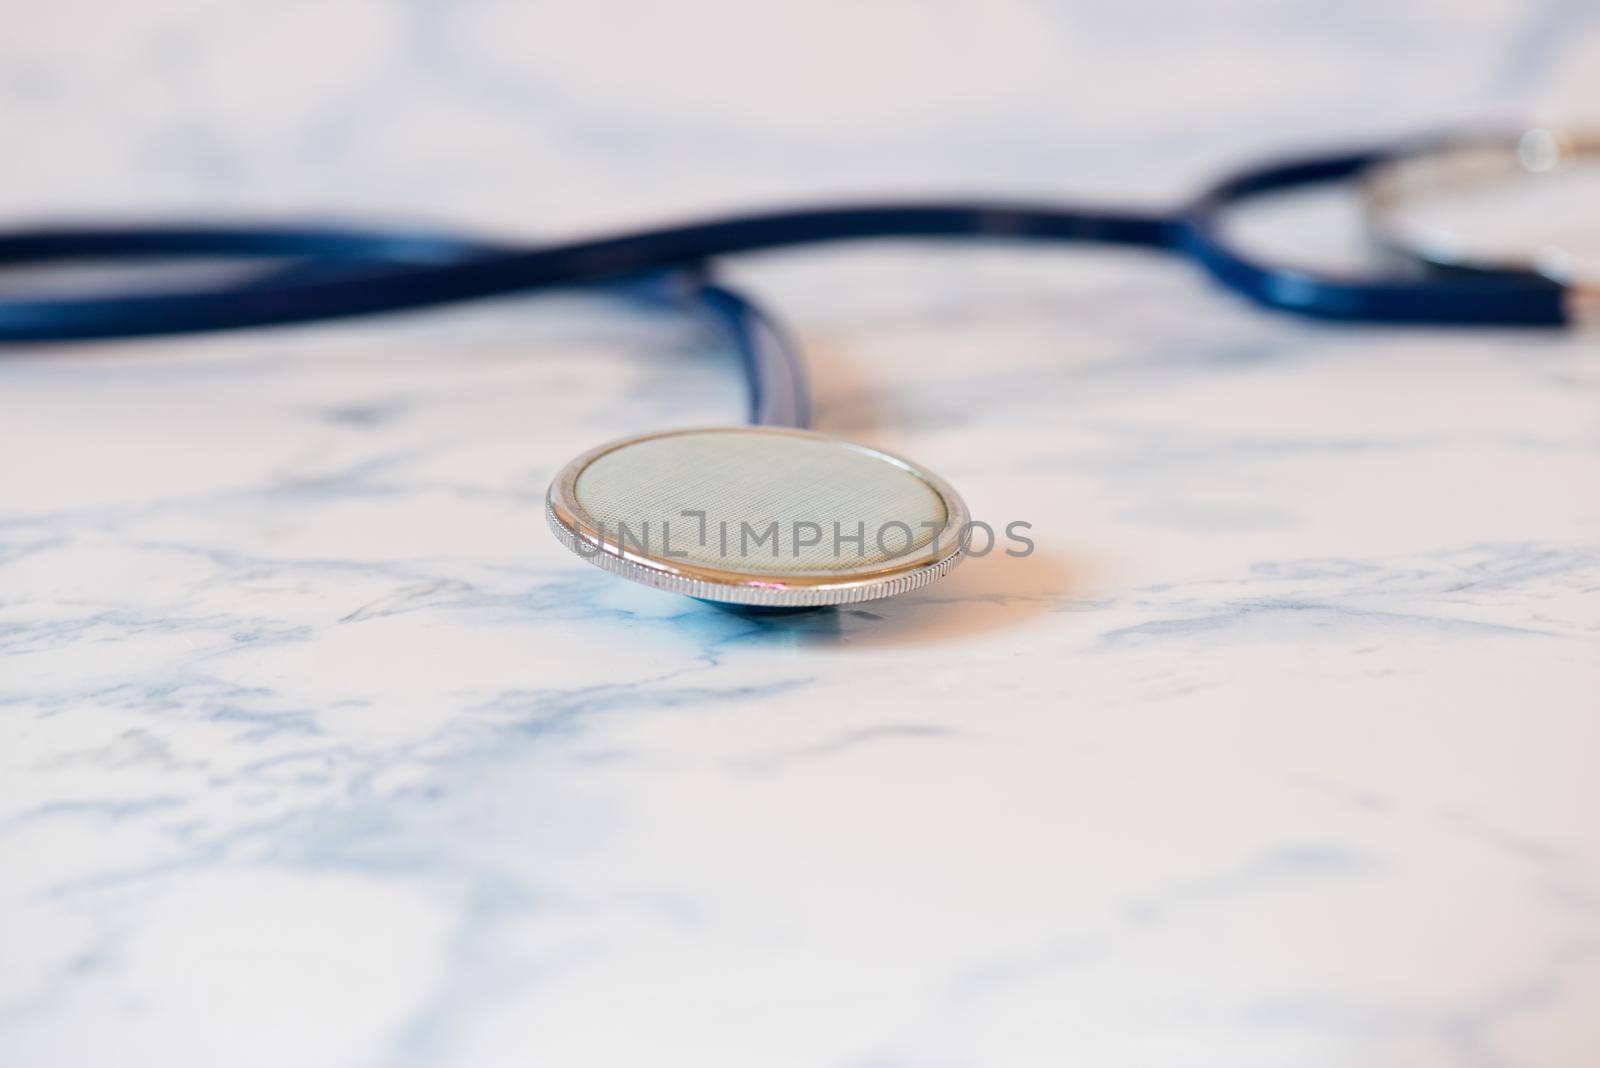 Macro shot of medical stethoscope or phonendoscope over light blue background.